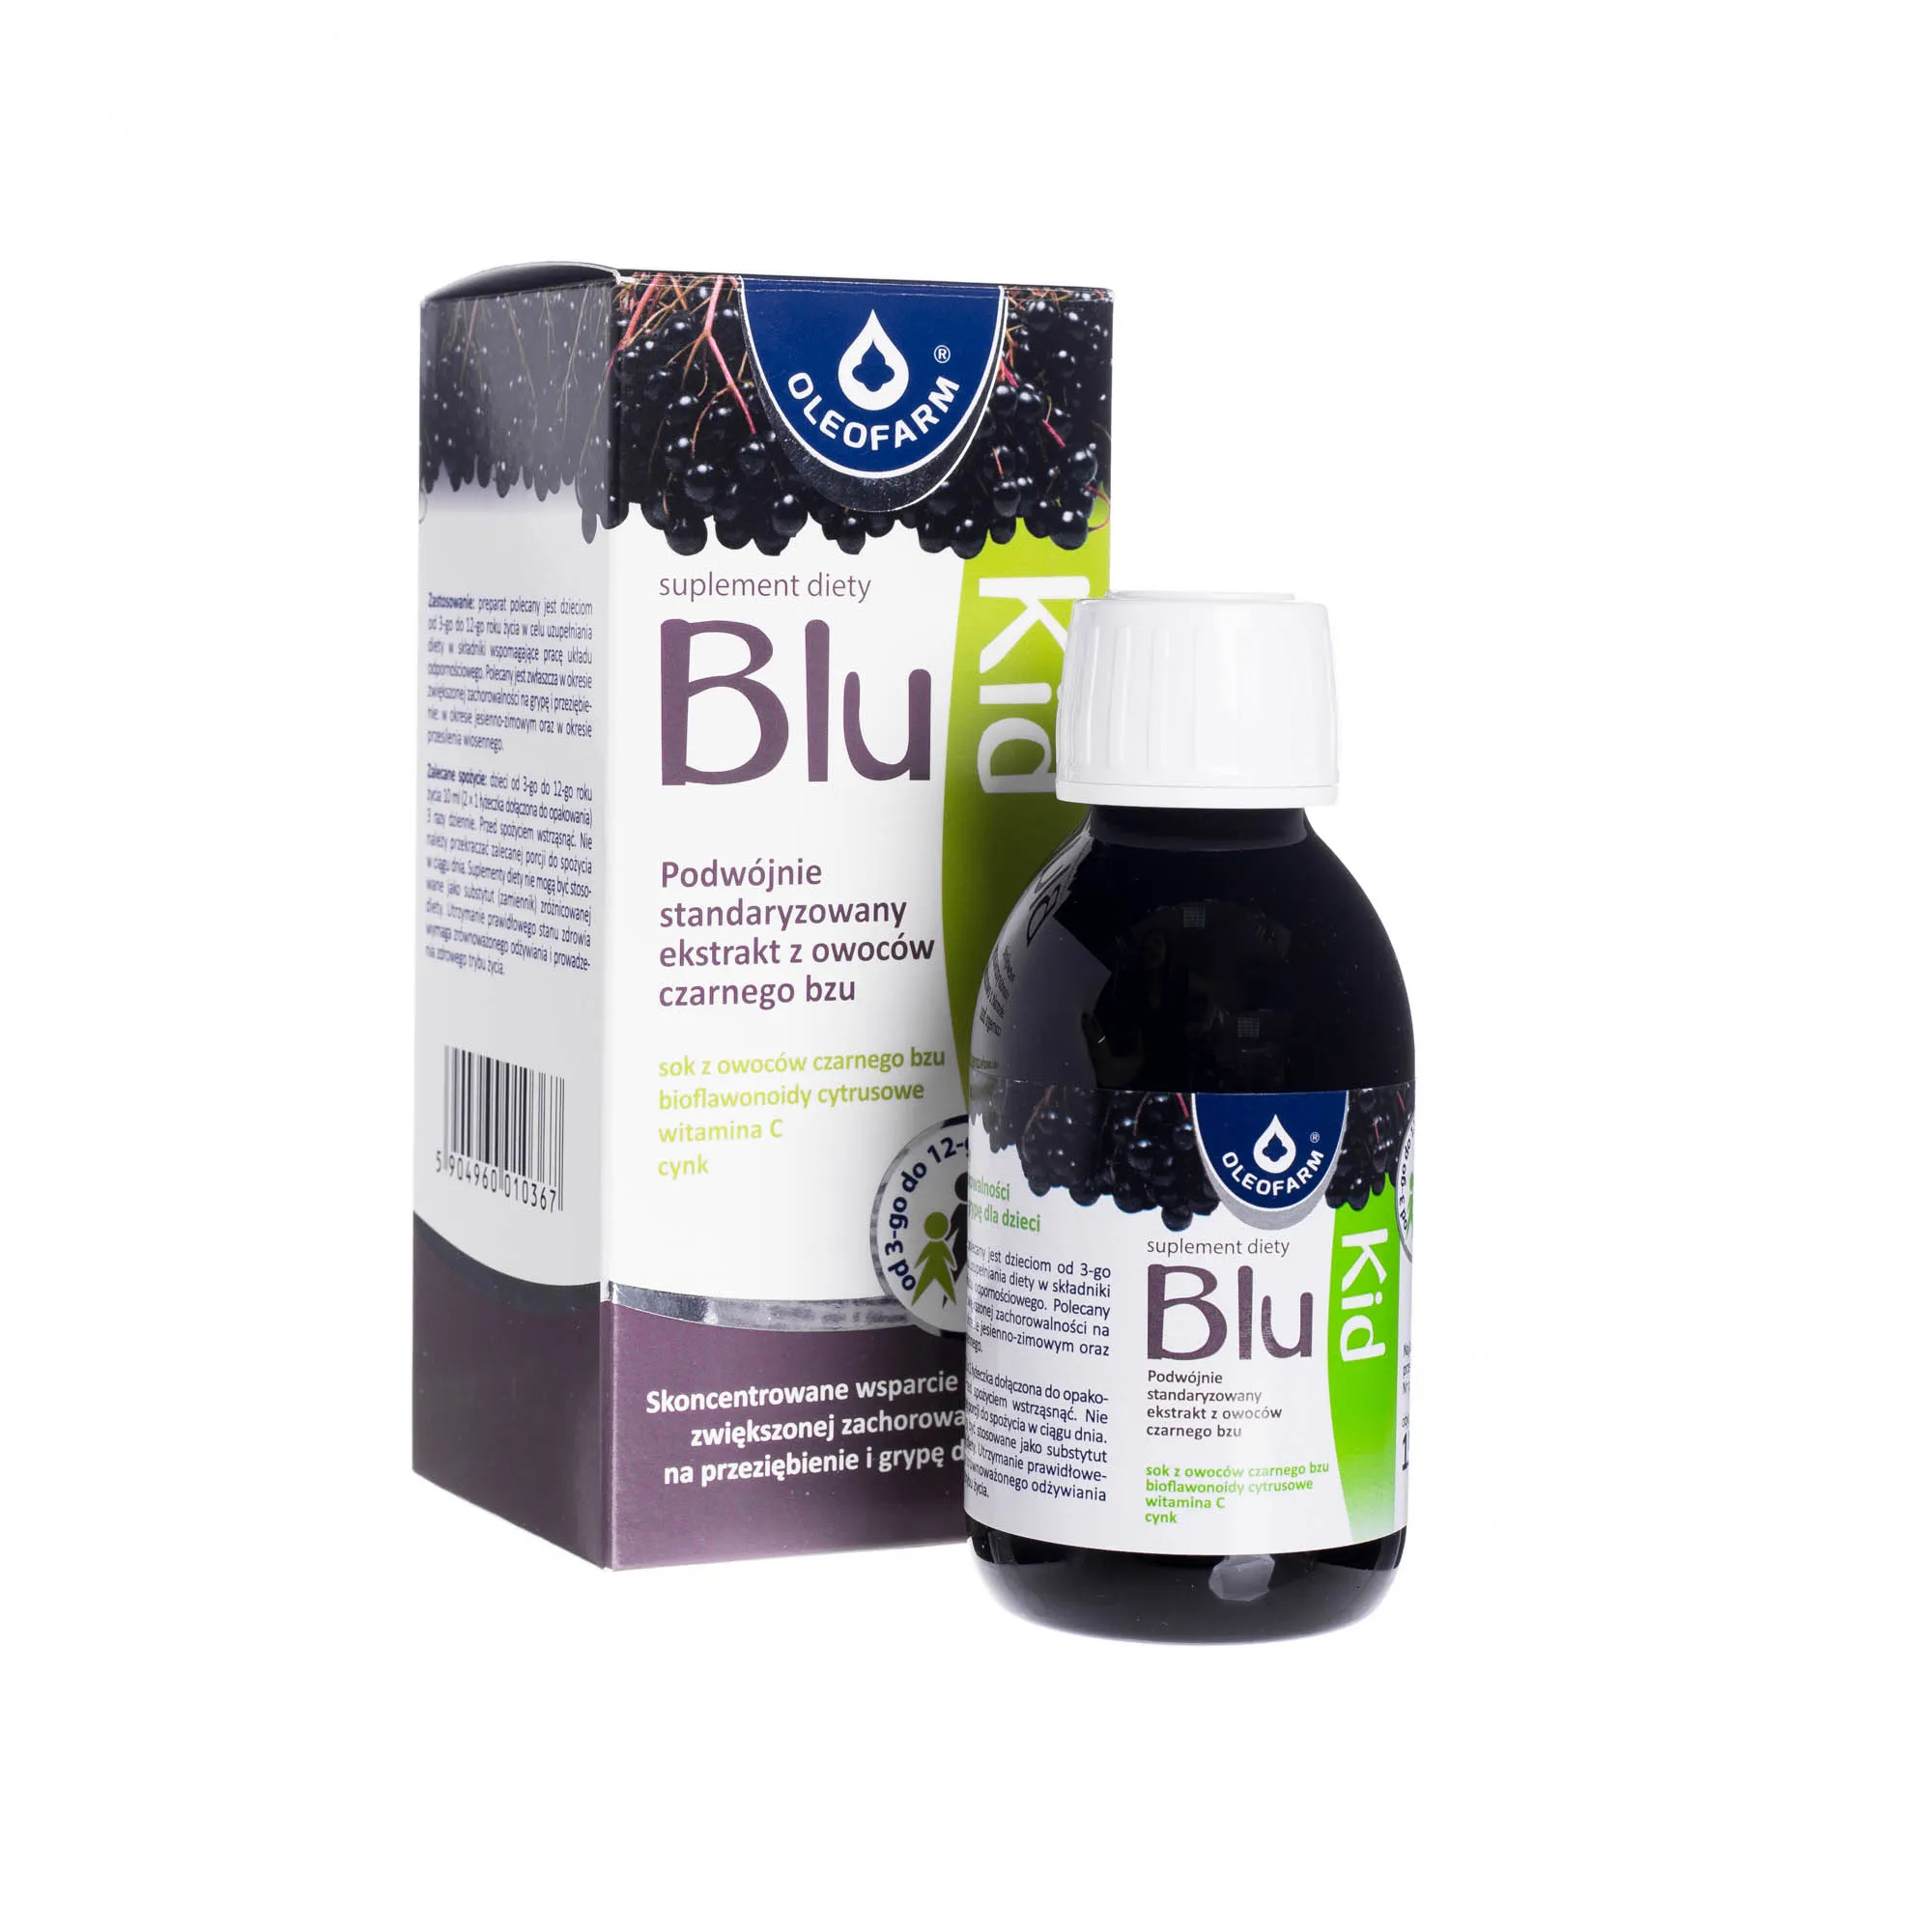 Blu Kid, suplement diety, podwójnie standaryzowany ekstrakt z czarnego bzu, 150 ml